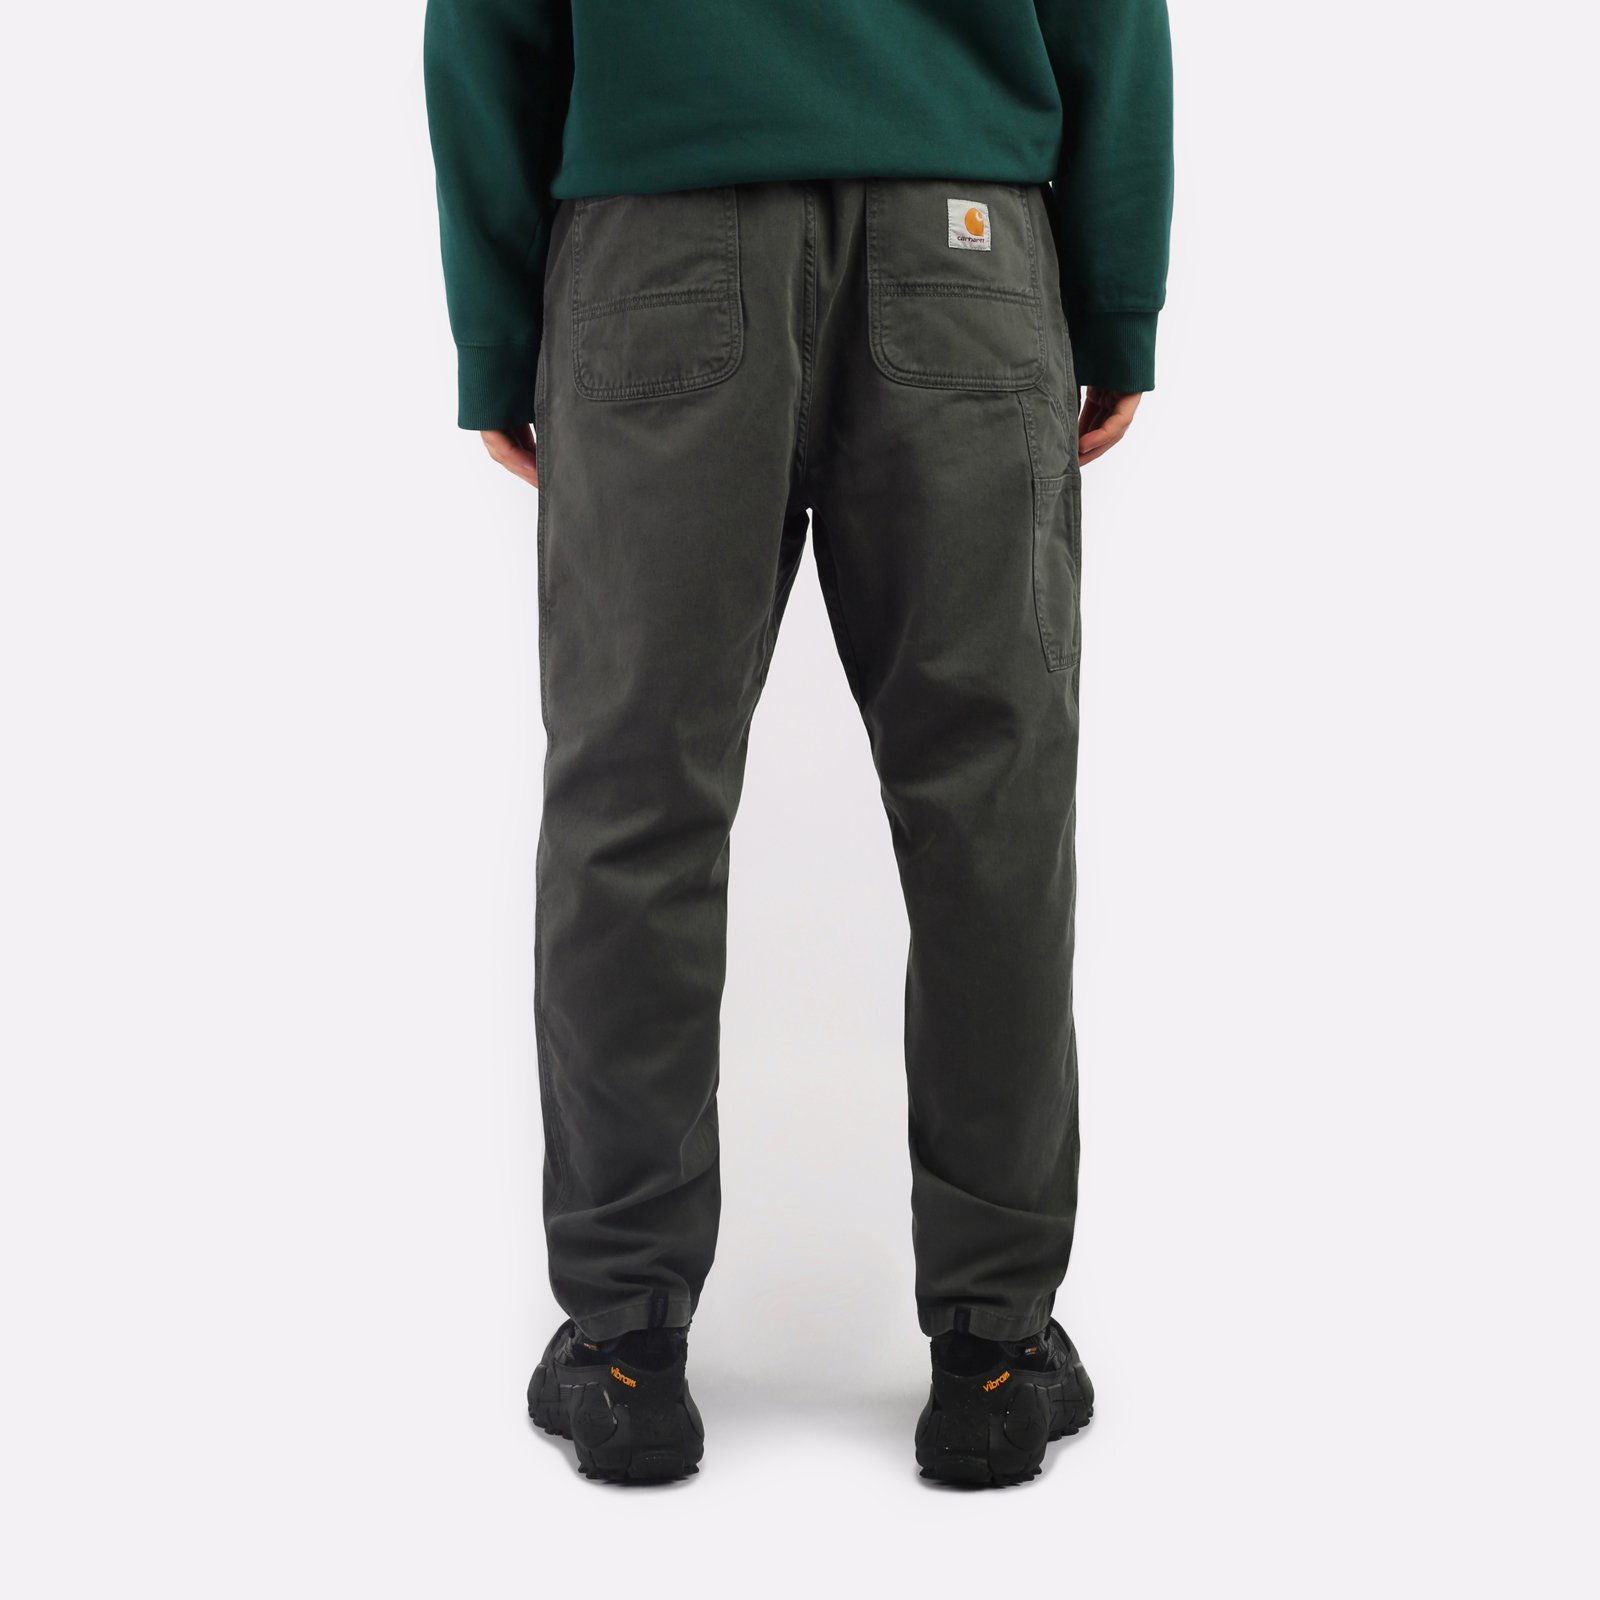 мужские зеленые брюки Carhartt WIP Flint Pant I029919-jura - цена, описание, фото 2